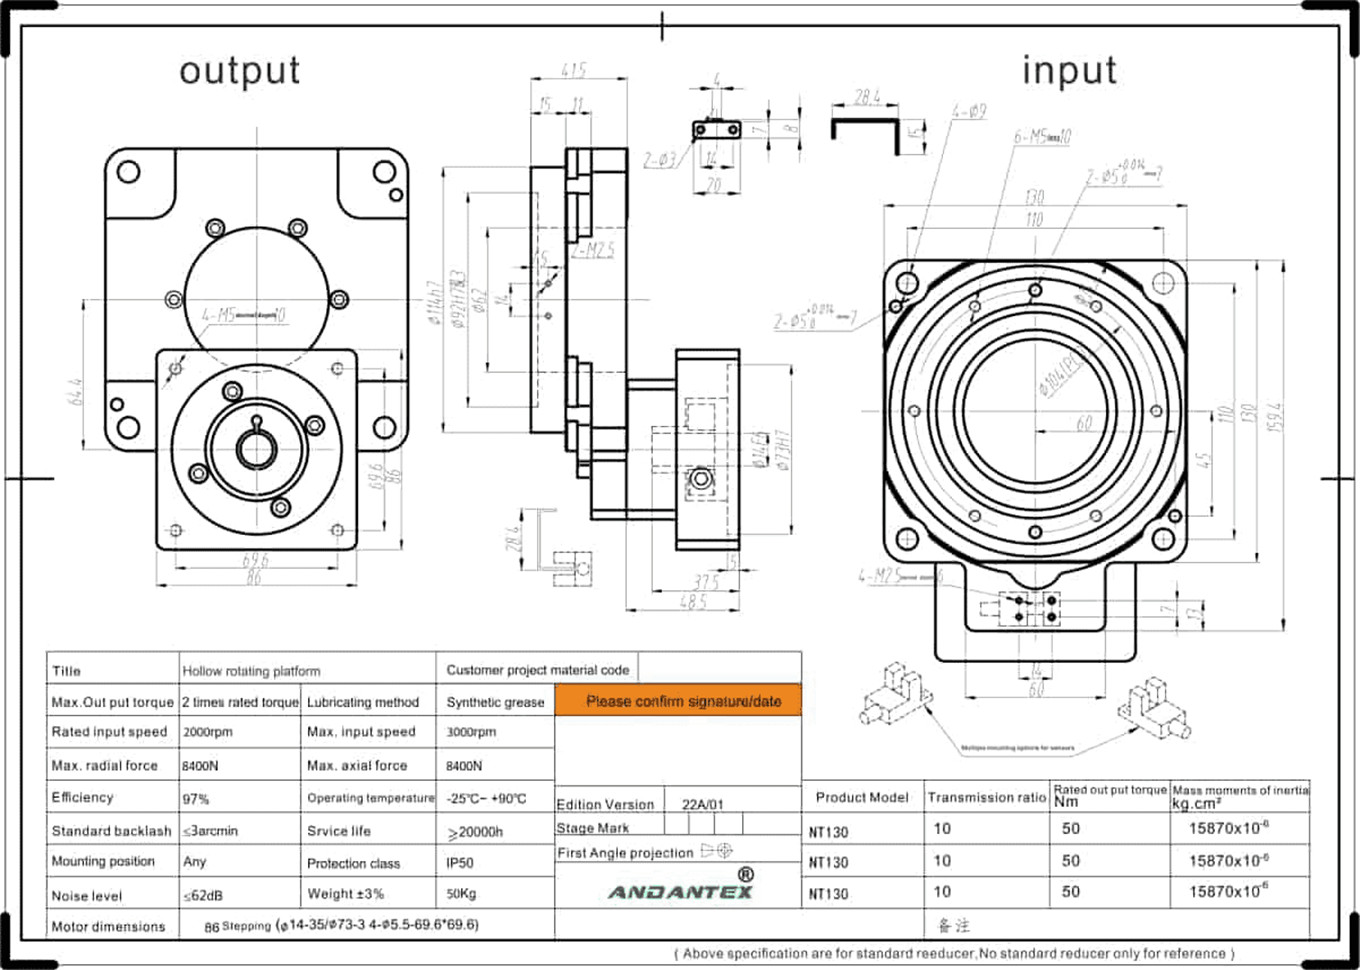 ANDANTEX NT130-10 etapa rotativa hueca en la fabricación de componentes electrónicos-01